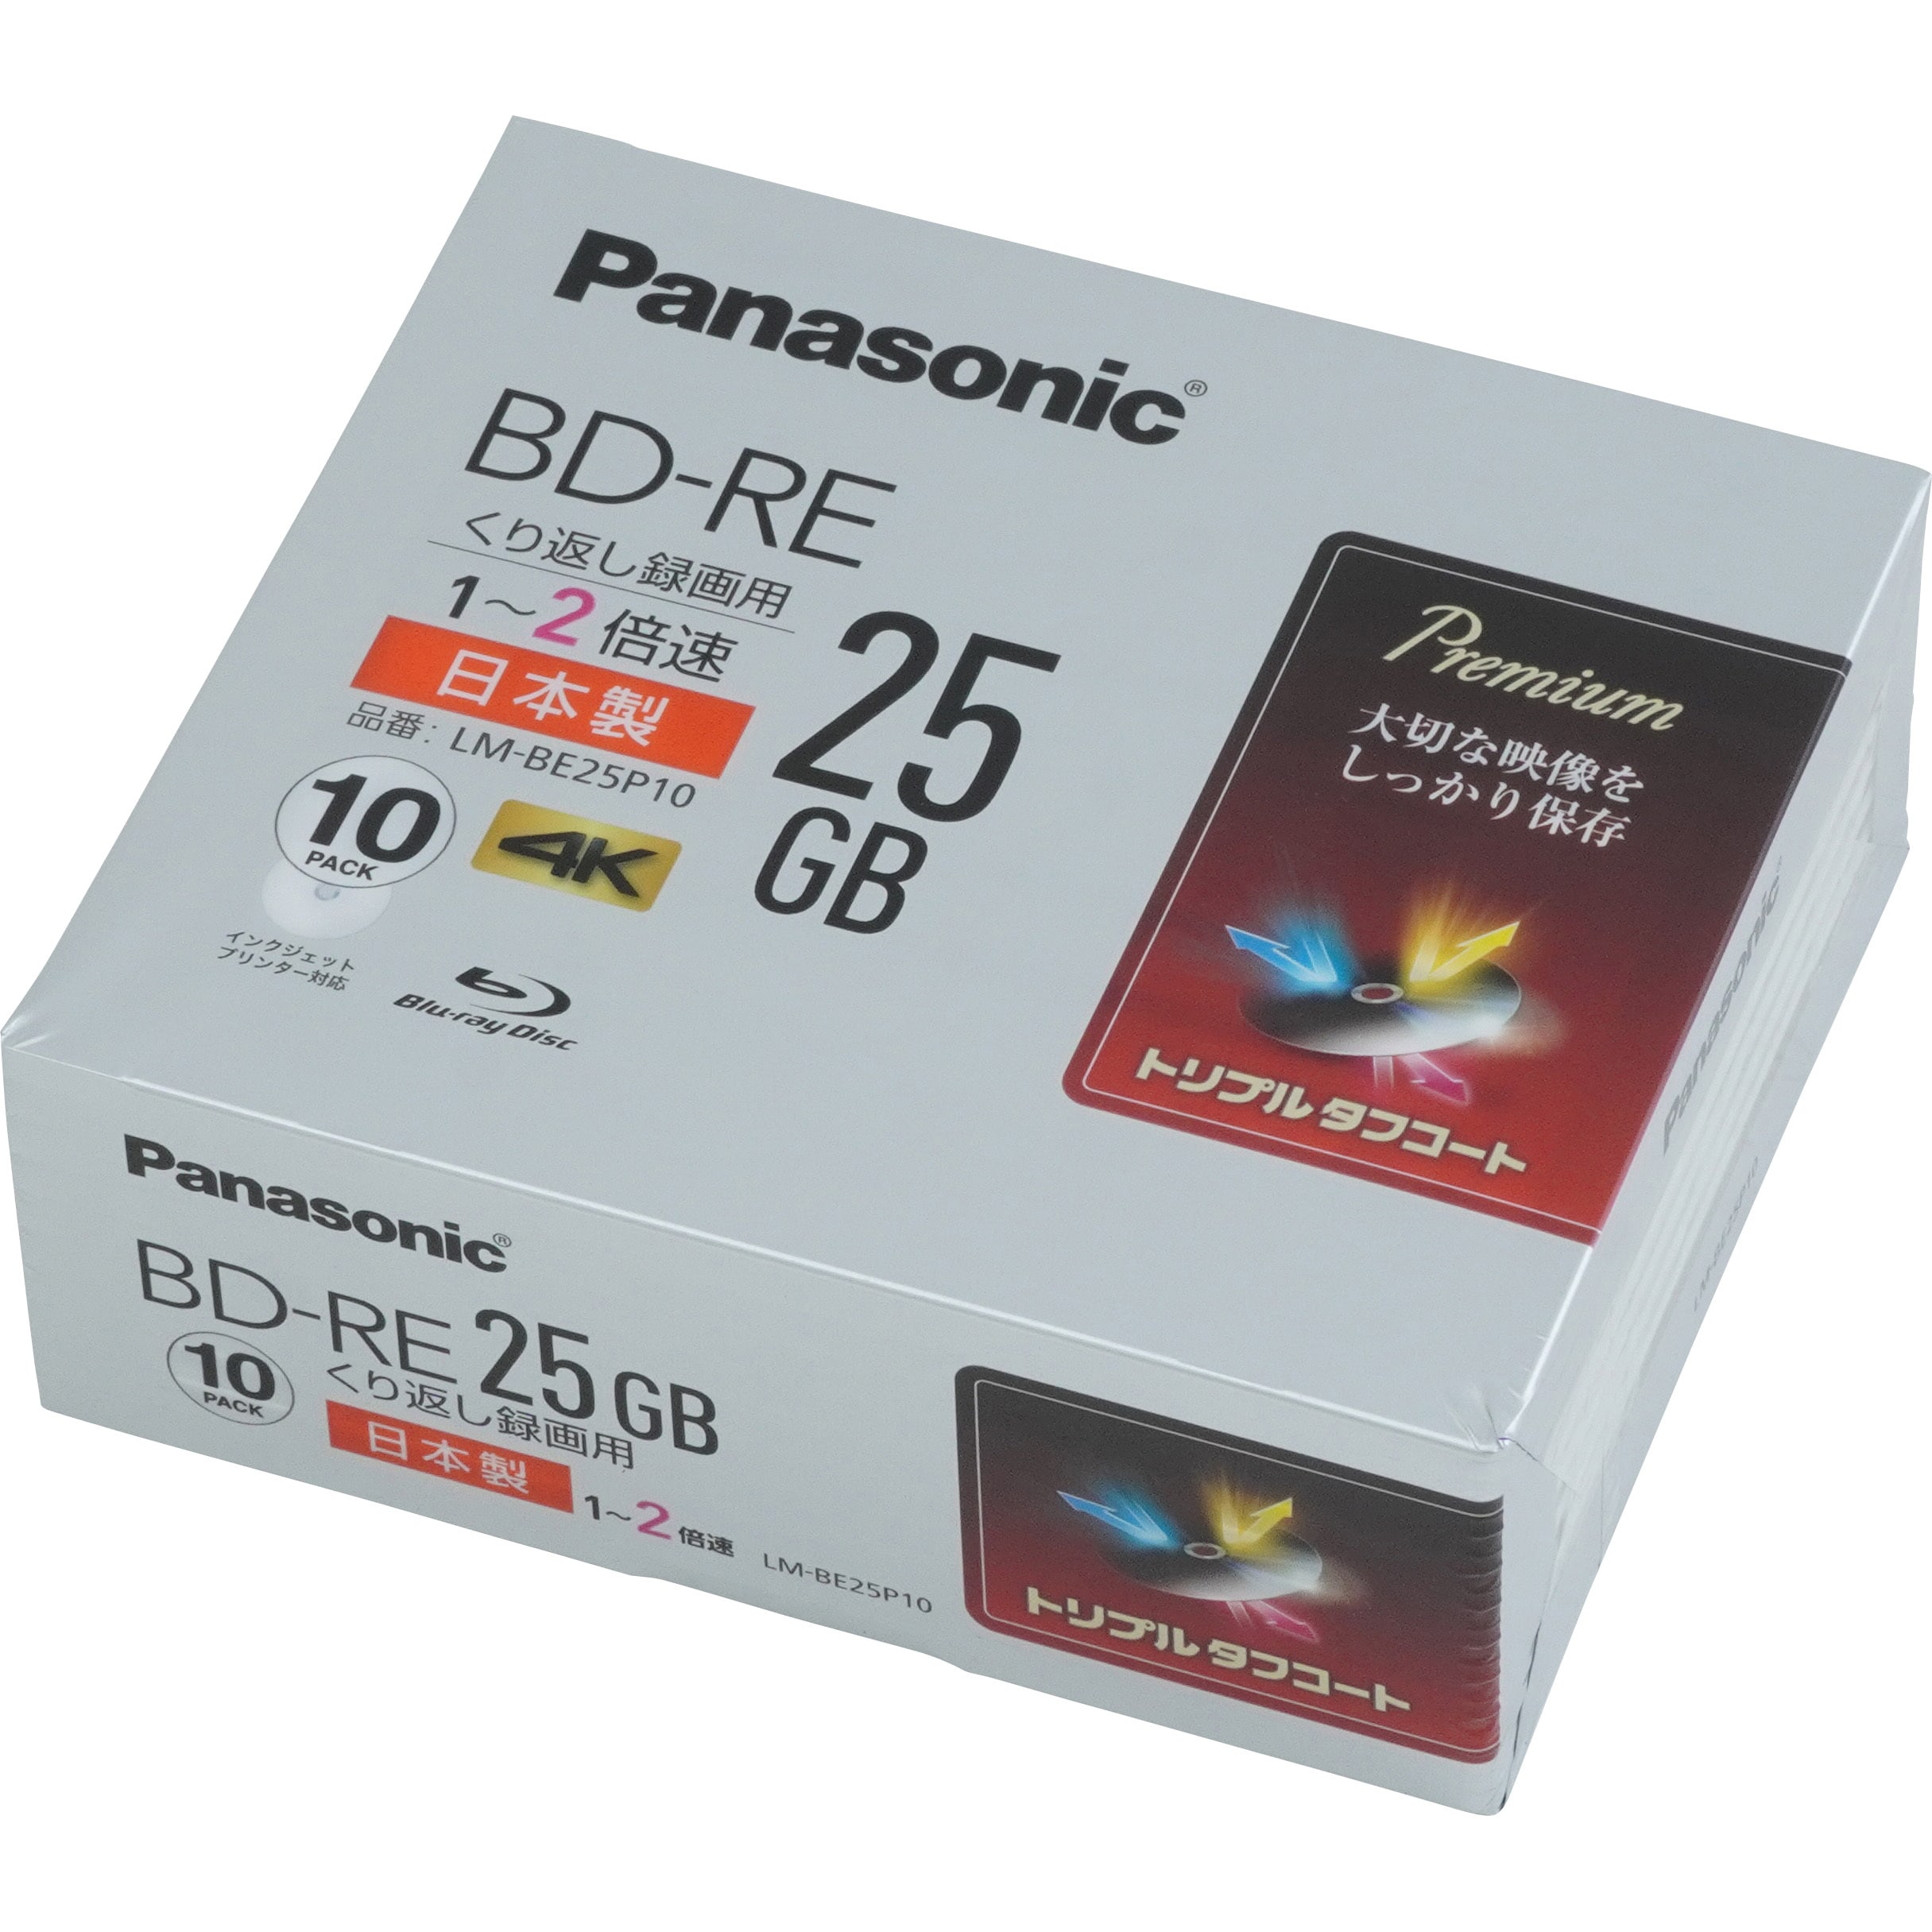 新品　Panasonic LM-BR50LP10 パナソニックブルーレイディスク